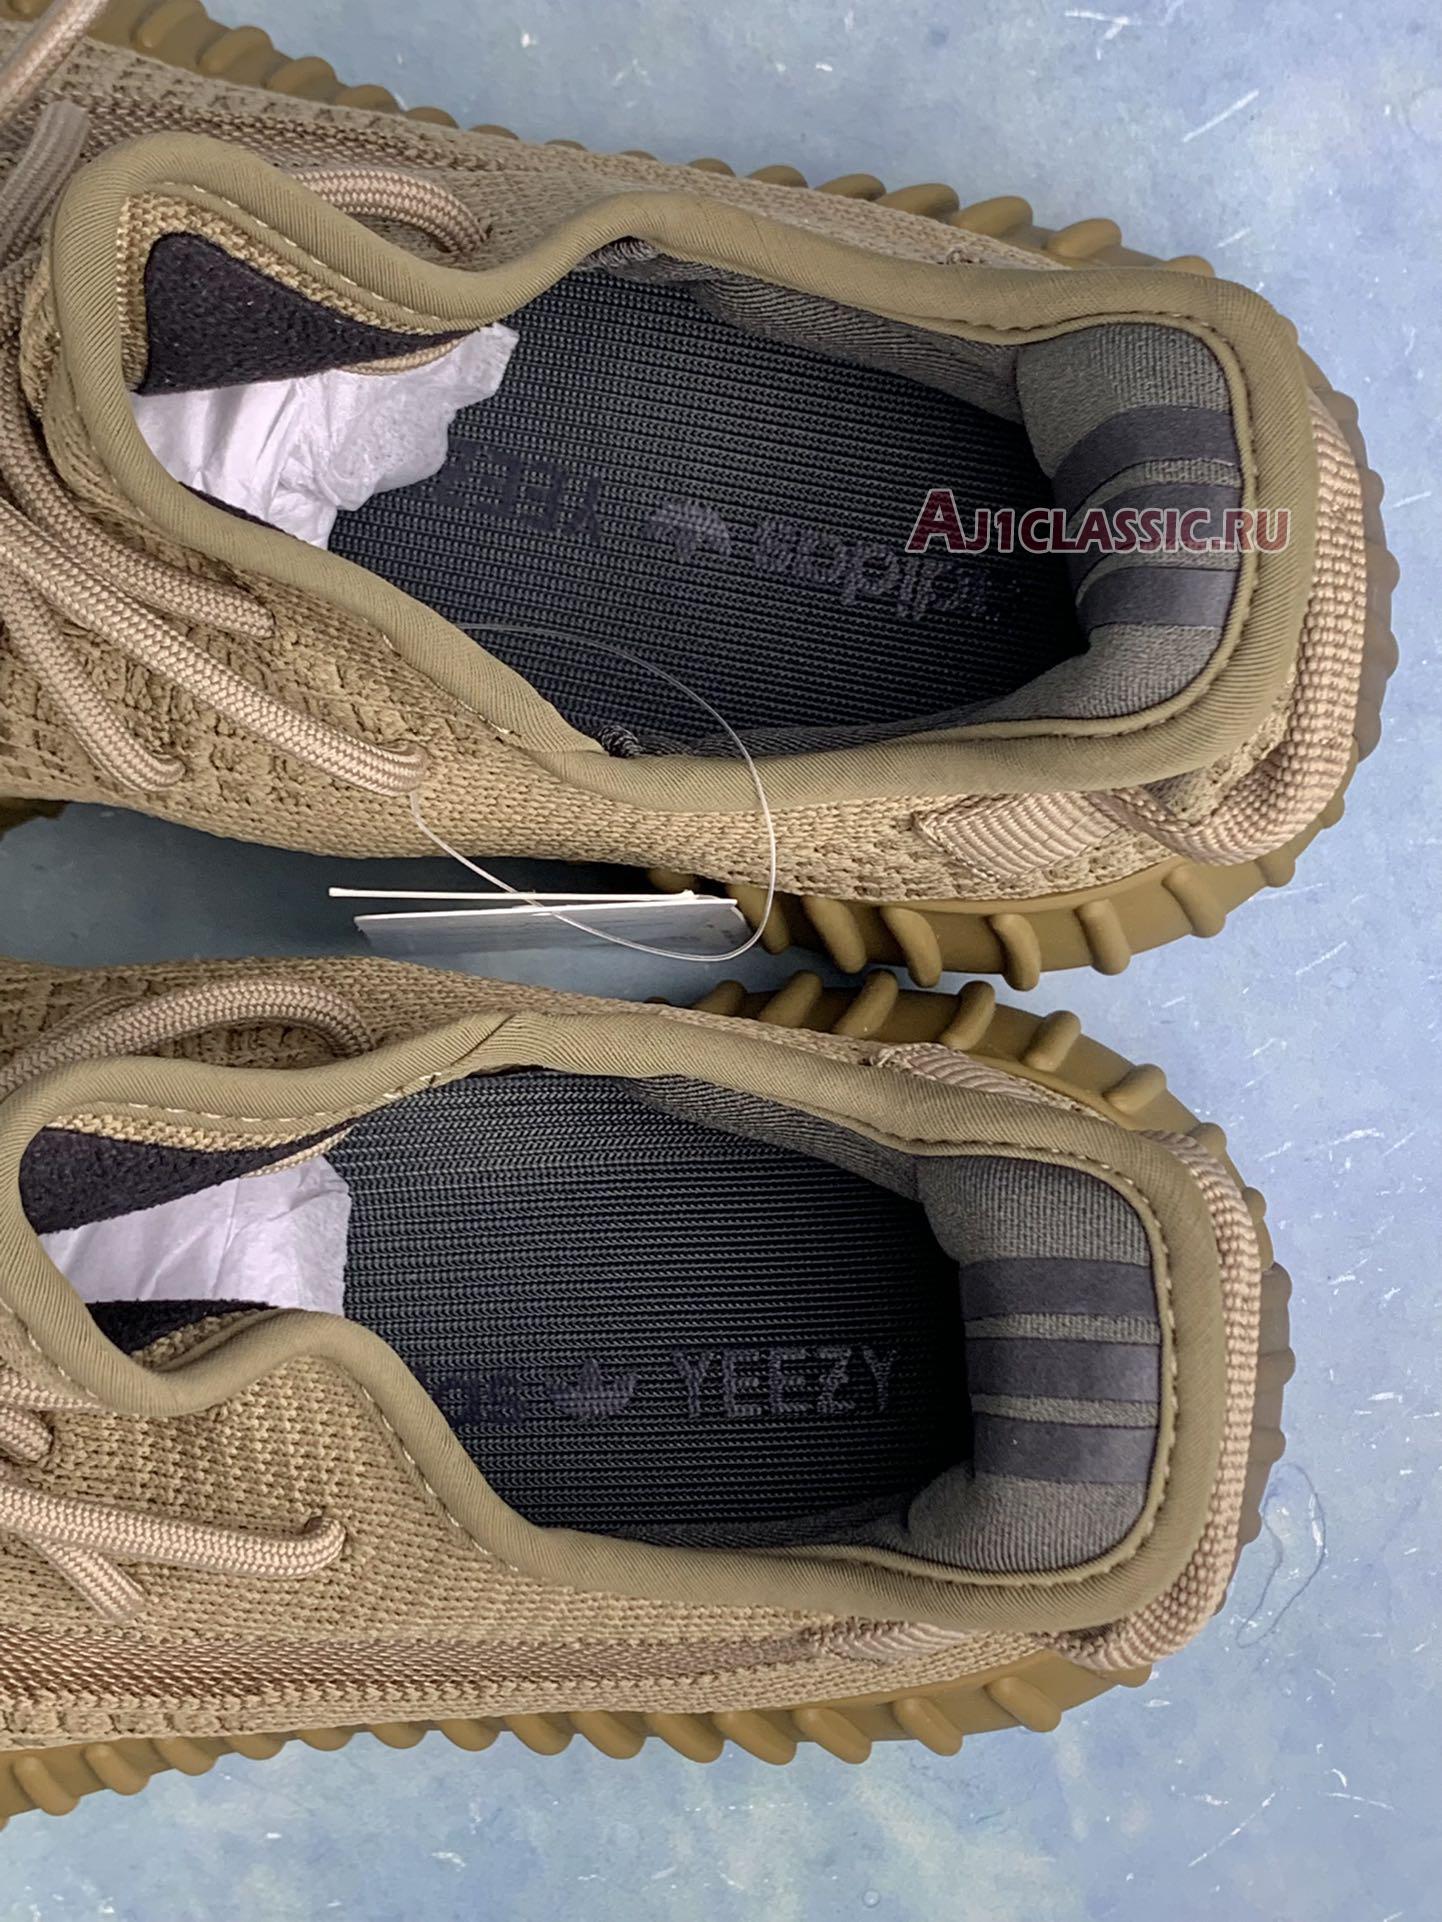 Adidas Yeezy Boost 350 V2 "Earth" FX9033-2